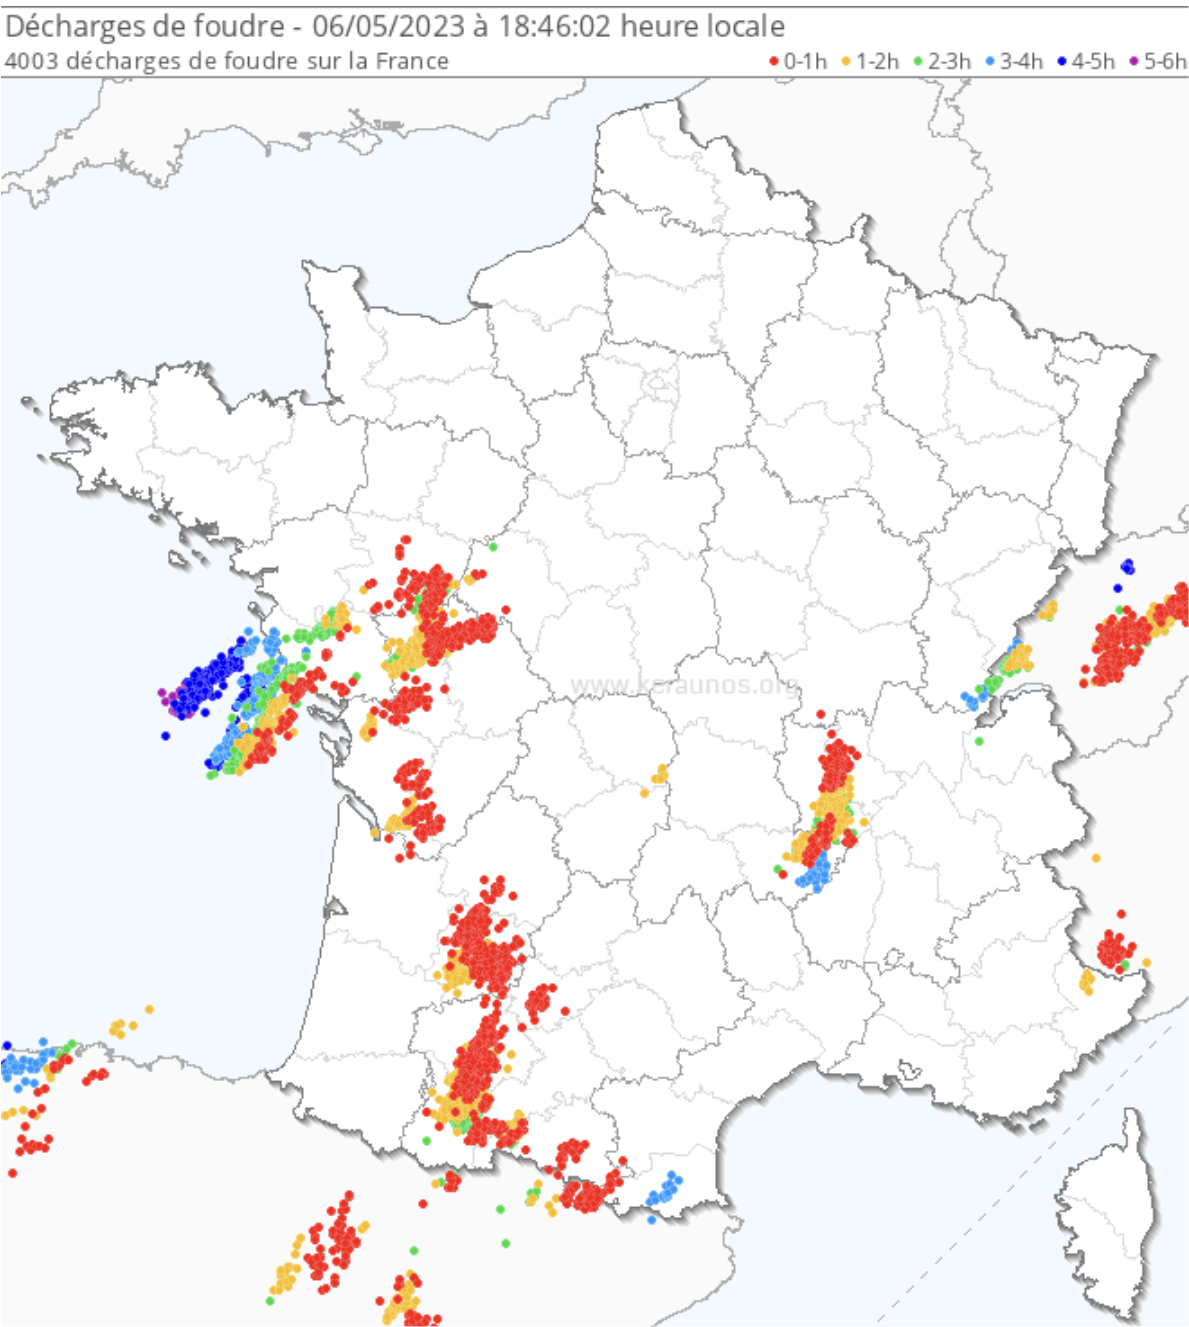 <p>Les orages sont parfois forts avec des chutes de grêle dans l'ouest, le long d'un axe de convergence de basse couche (creusement d'une petite dépression). A noter une supercellule anticyclonique née au sud de la Loire, à présent dans les Monts du Lyonnais.</p>